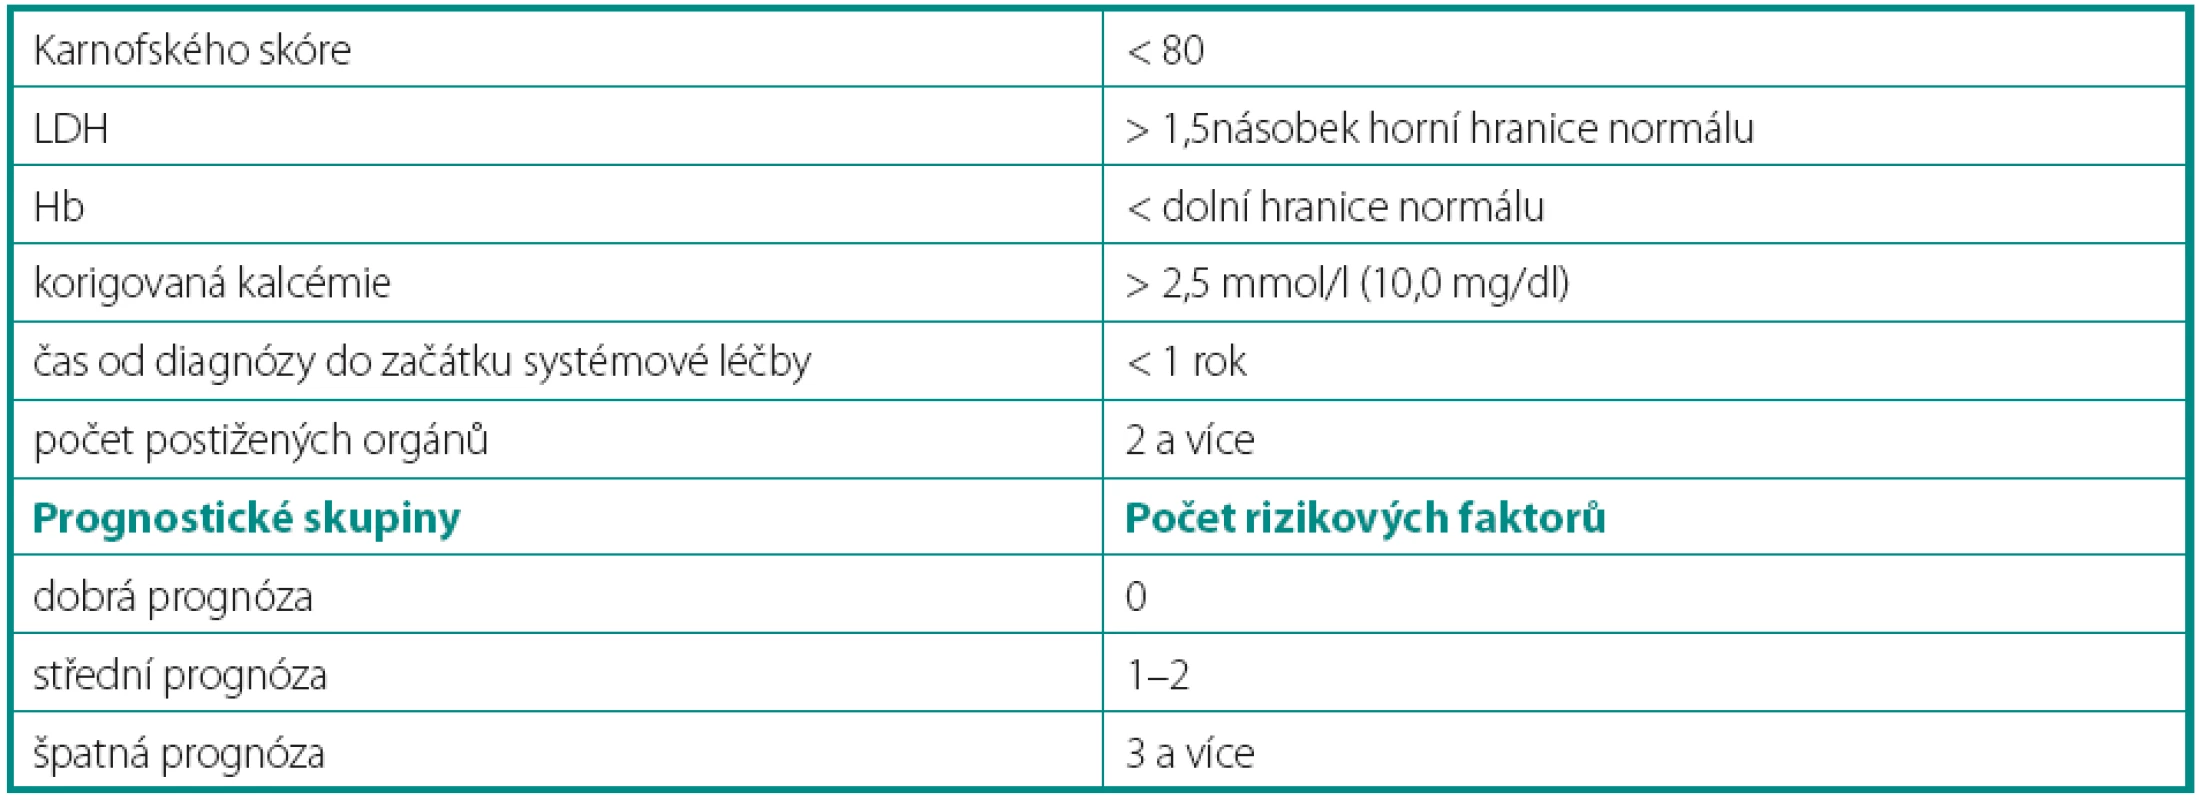 Modifikované MSKCC prognostické faktory užívané NCCN (National Comprehensive Cancer Network) a ČOS (Českou onkologickou společností (3–5)
Table 2. Modified MSKCC prognostic factors used by NCCN (National Comprehensive Cancer Network) and ČOS (Czech Society of oncology) (3–5)